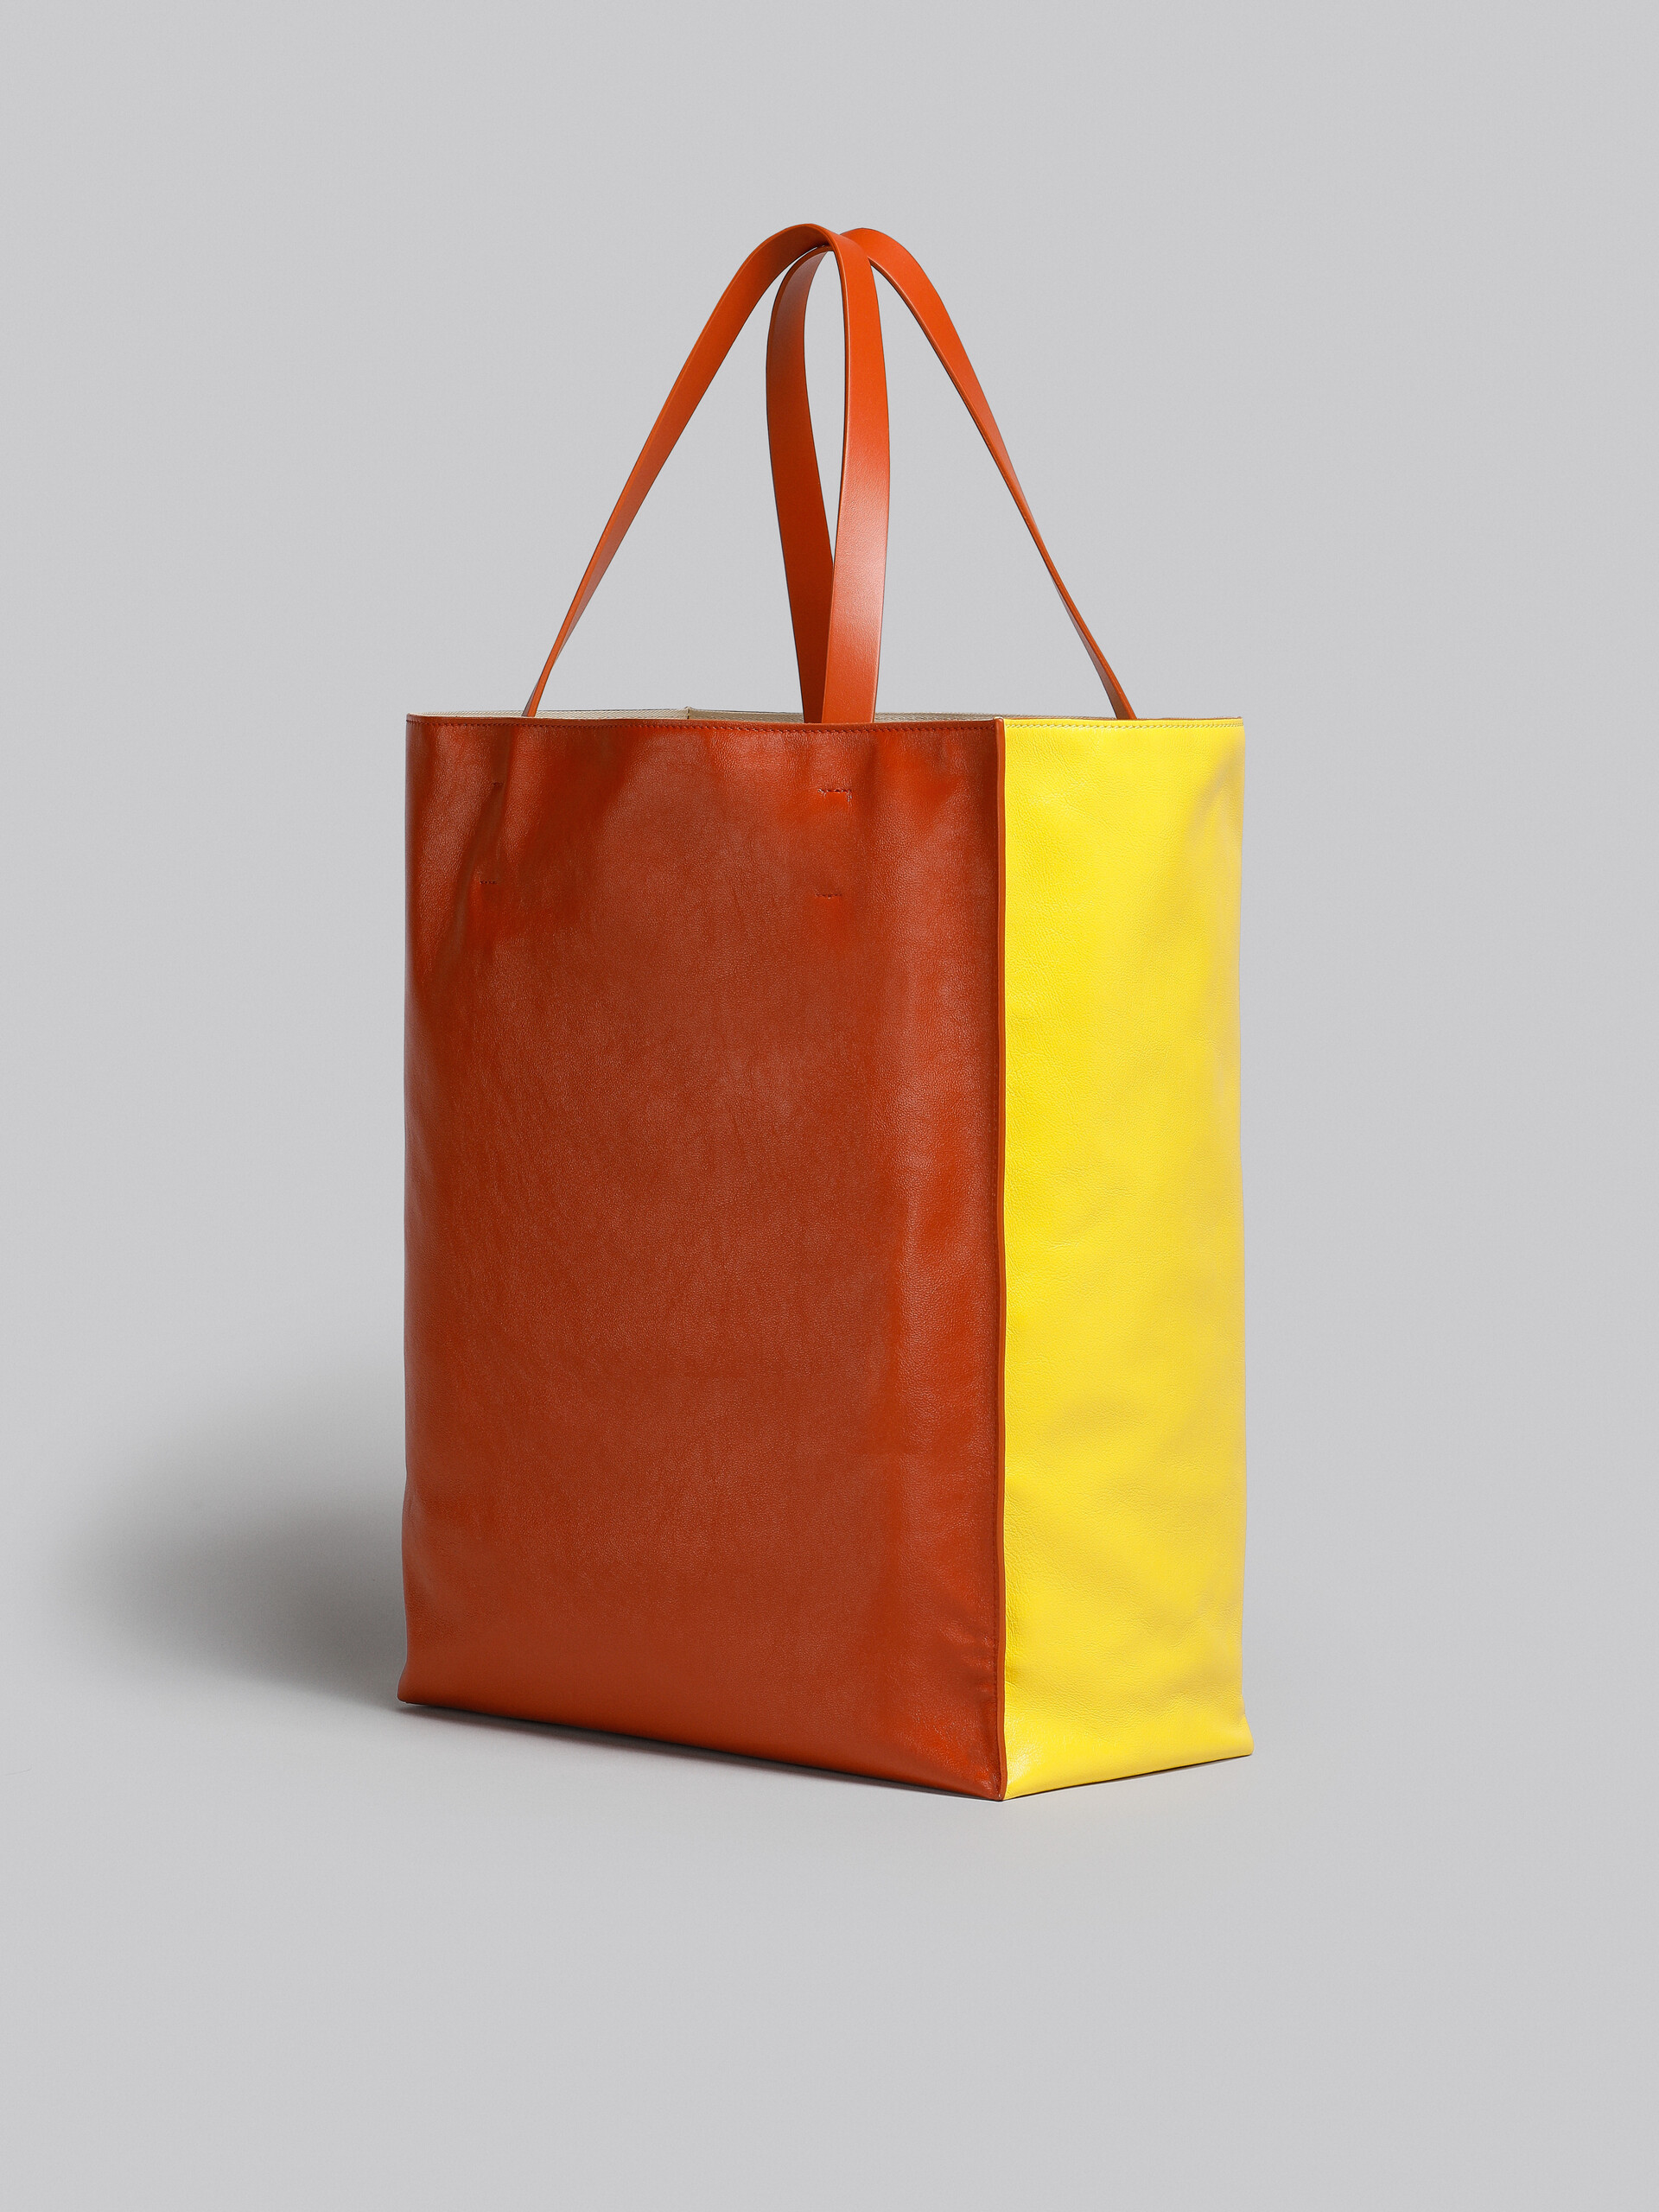 Grand sac MUSEO SOFT en cuir jaune et marron - Sacs cabas - Image 3